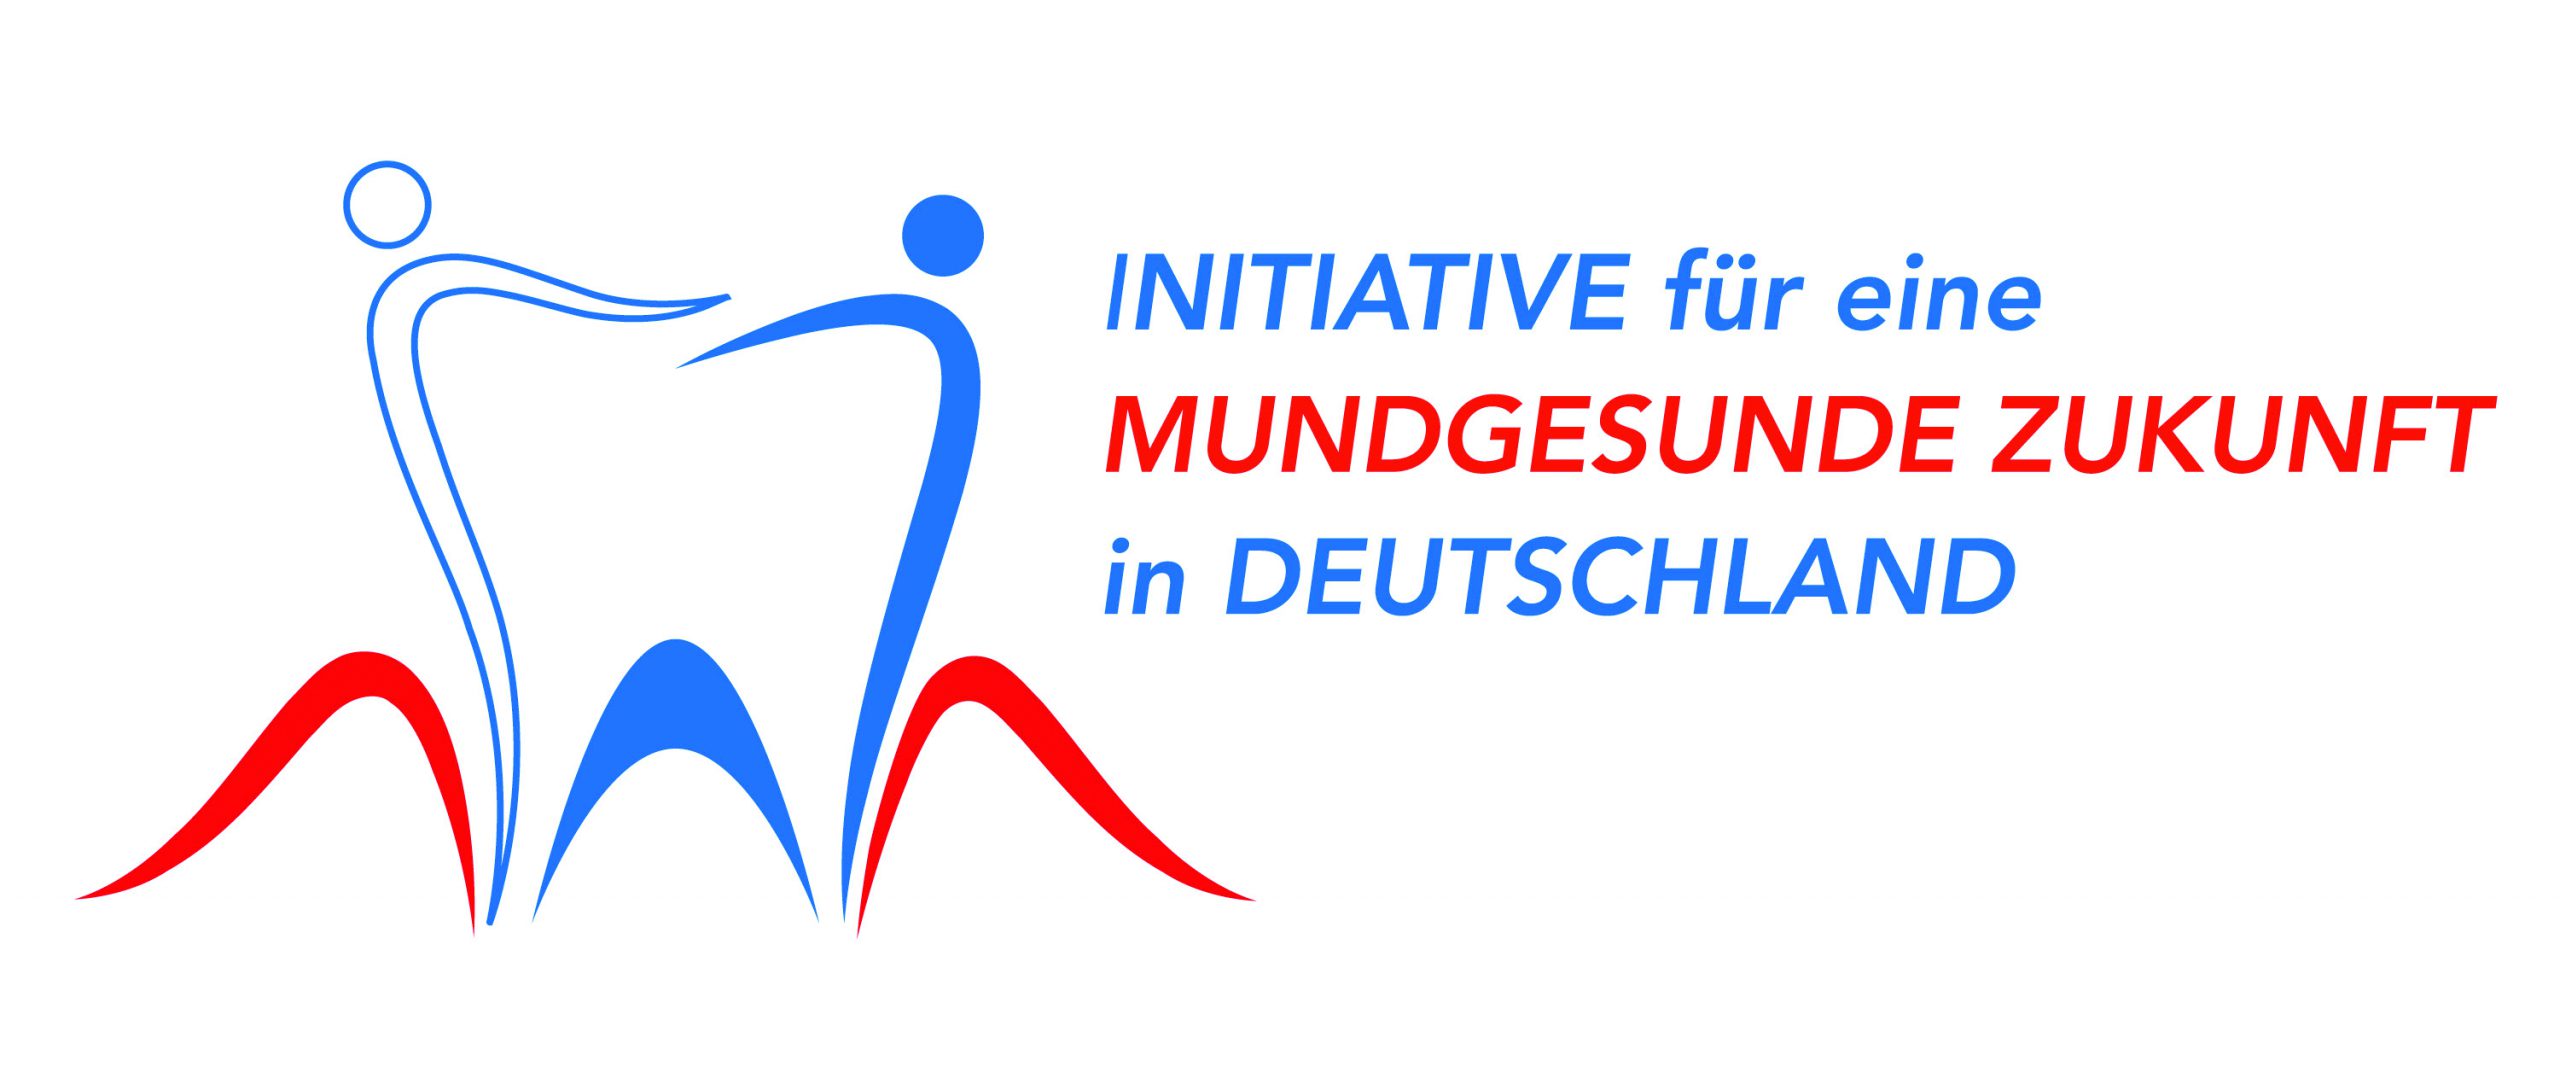 „Initiative für eine mundgesunde Zukunft in Deutschland“